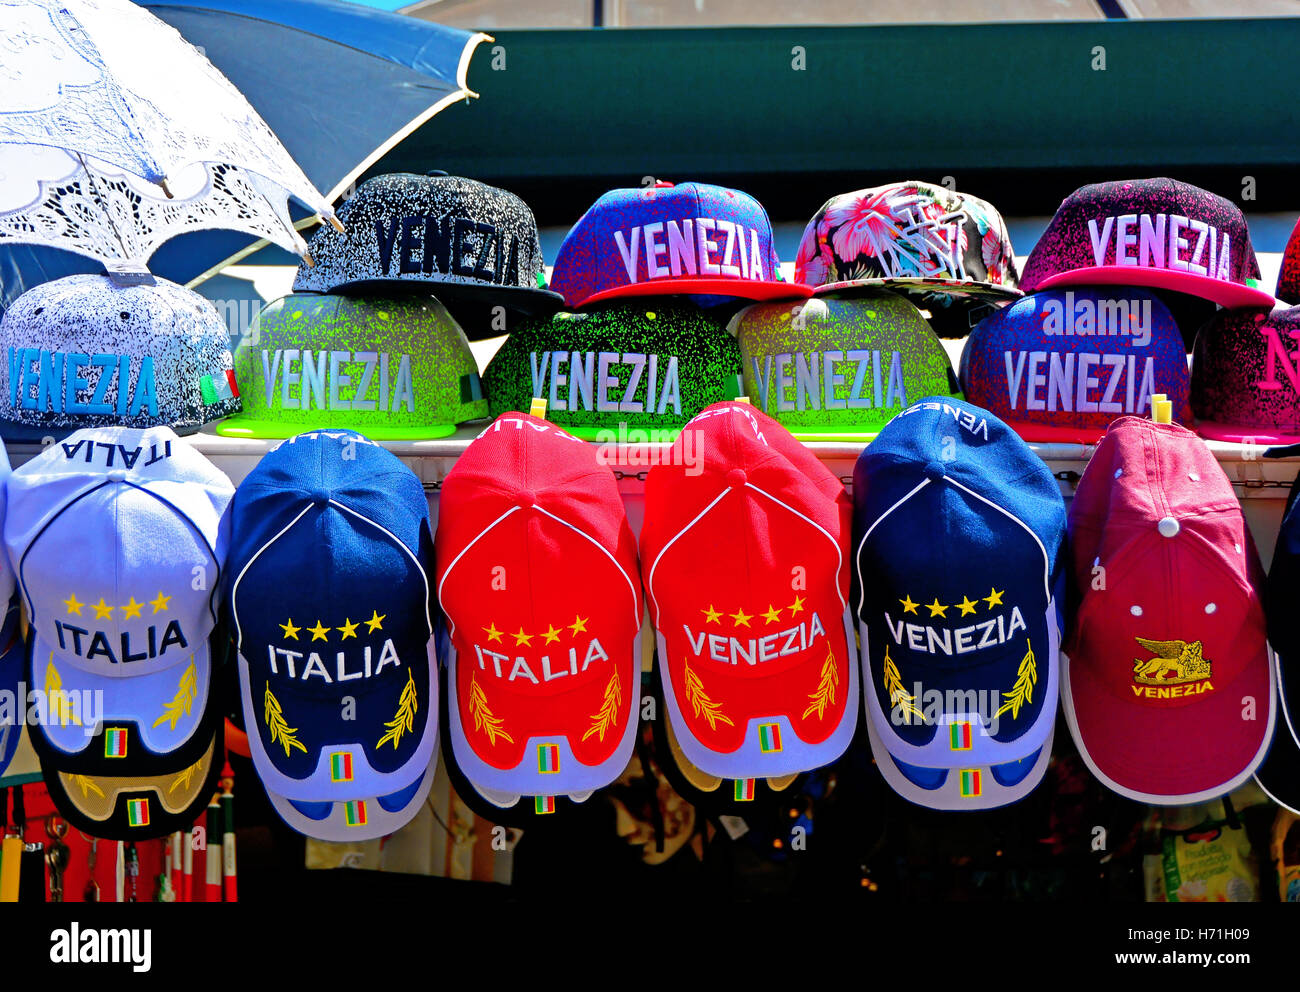 Venice Venezia Italia tourist baseball caps Stock Photo